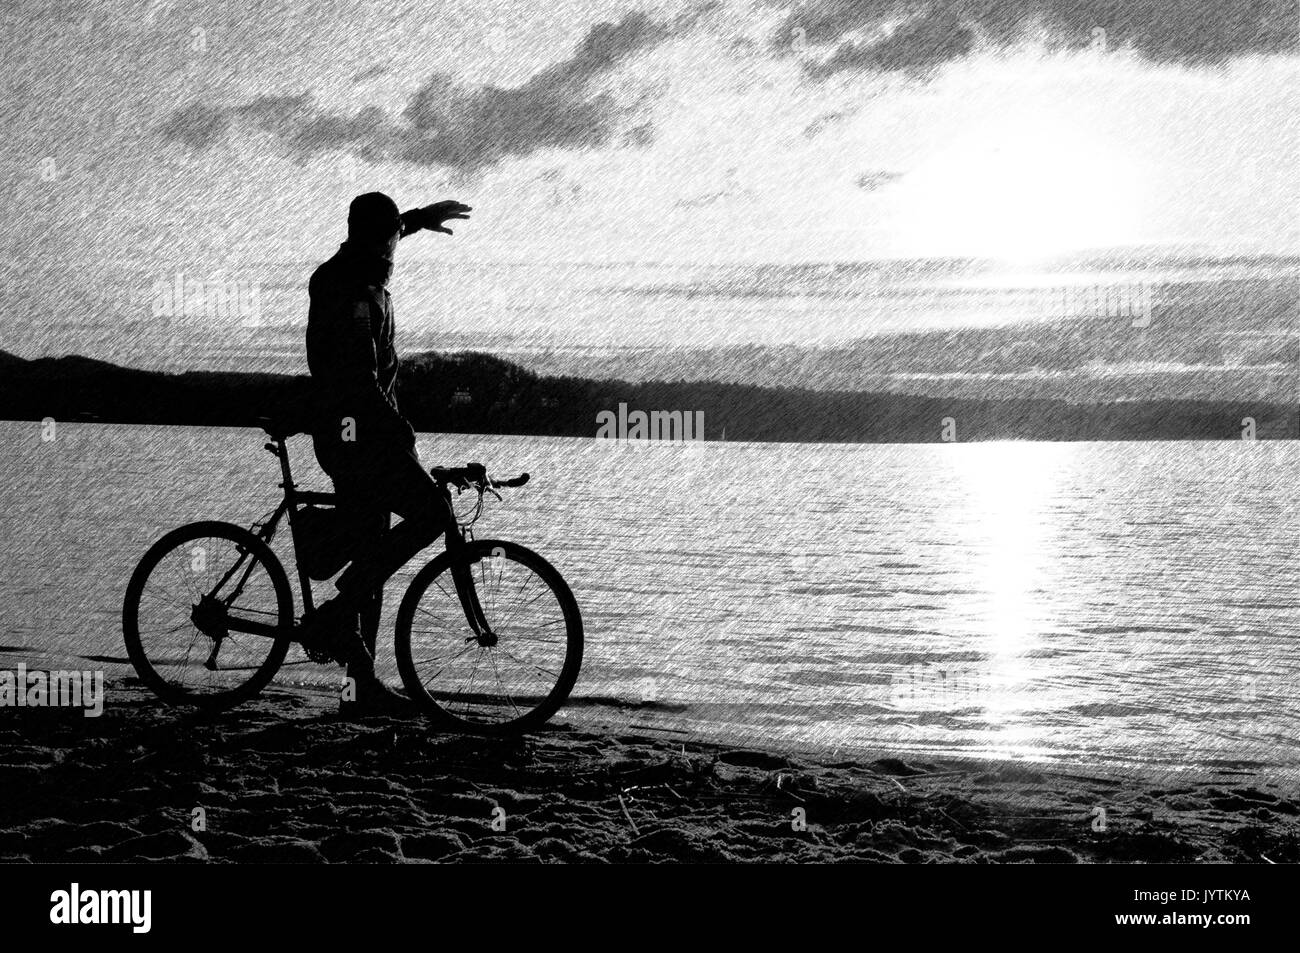 Bianco e Nero tratteggiato schizzo retrò. Giovane ciclista silhouette sulla spiaggia. Fine della stagione al lago. Foto Stock